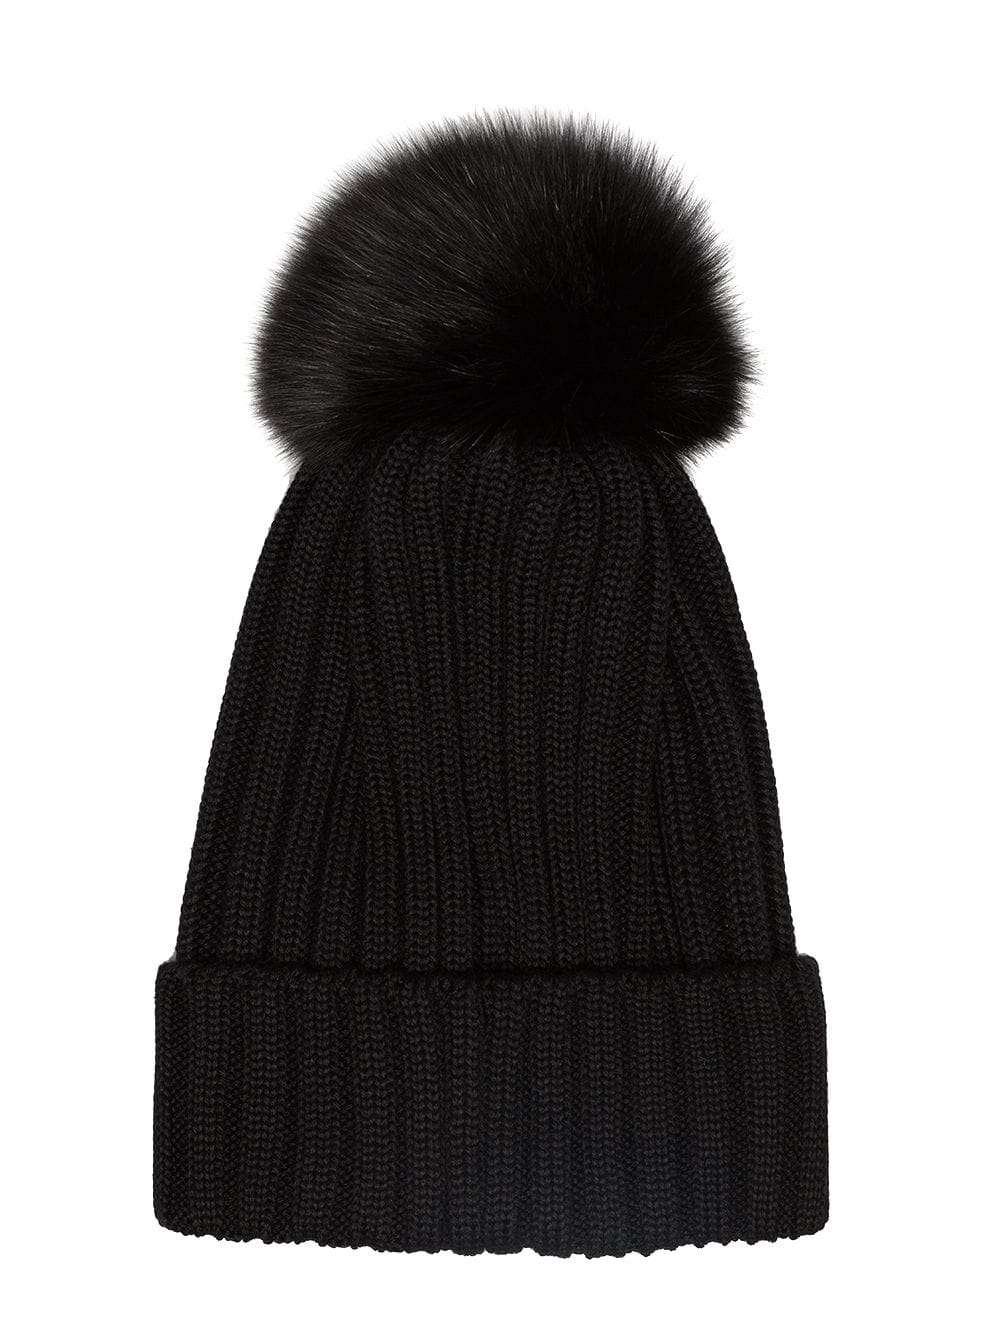 Moncler Black wool beanie hat with pom pom - GLAMI.gr